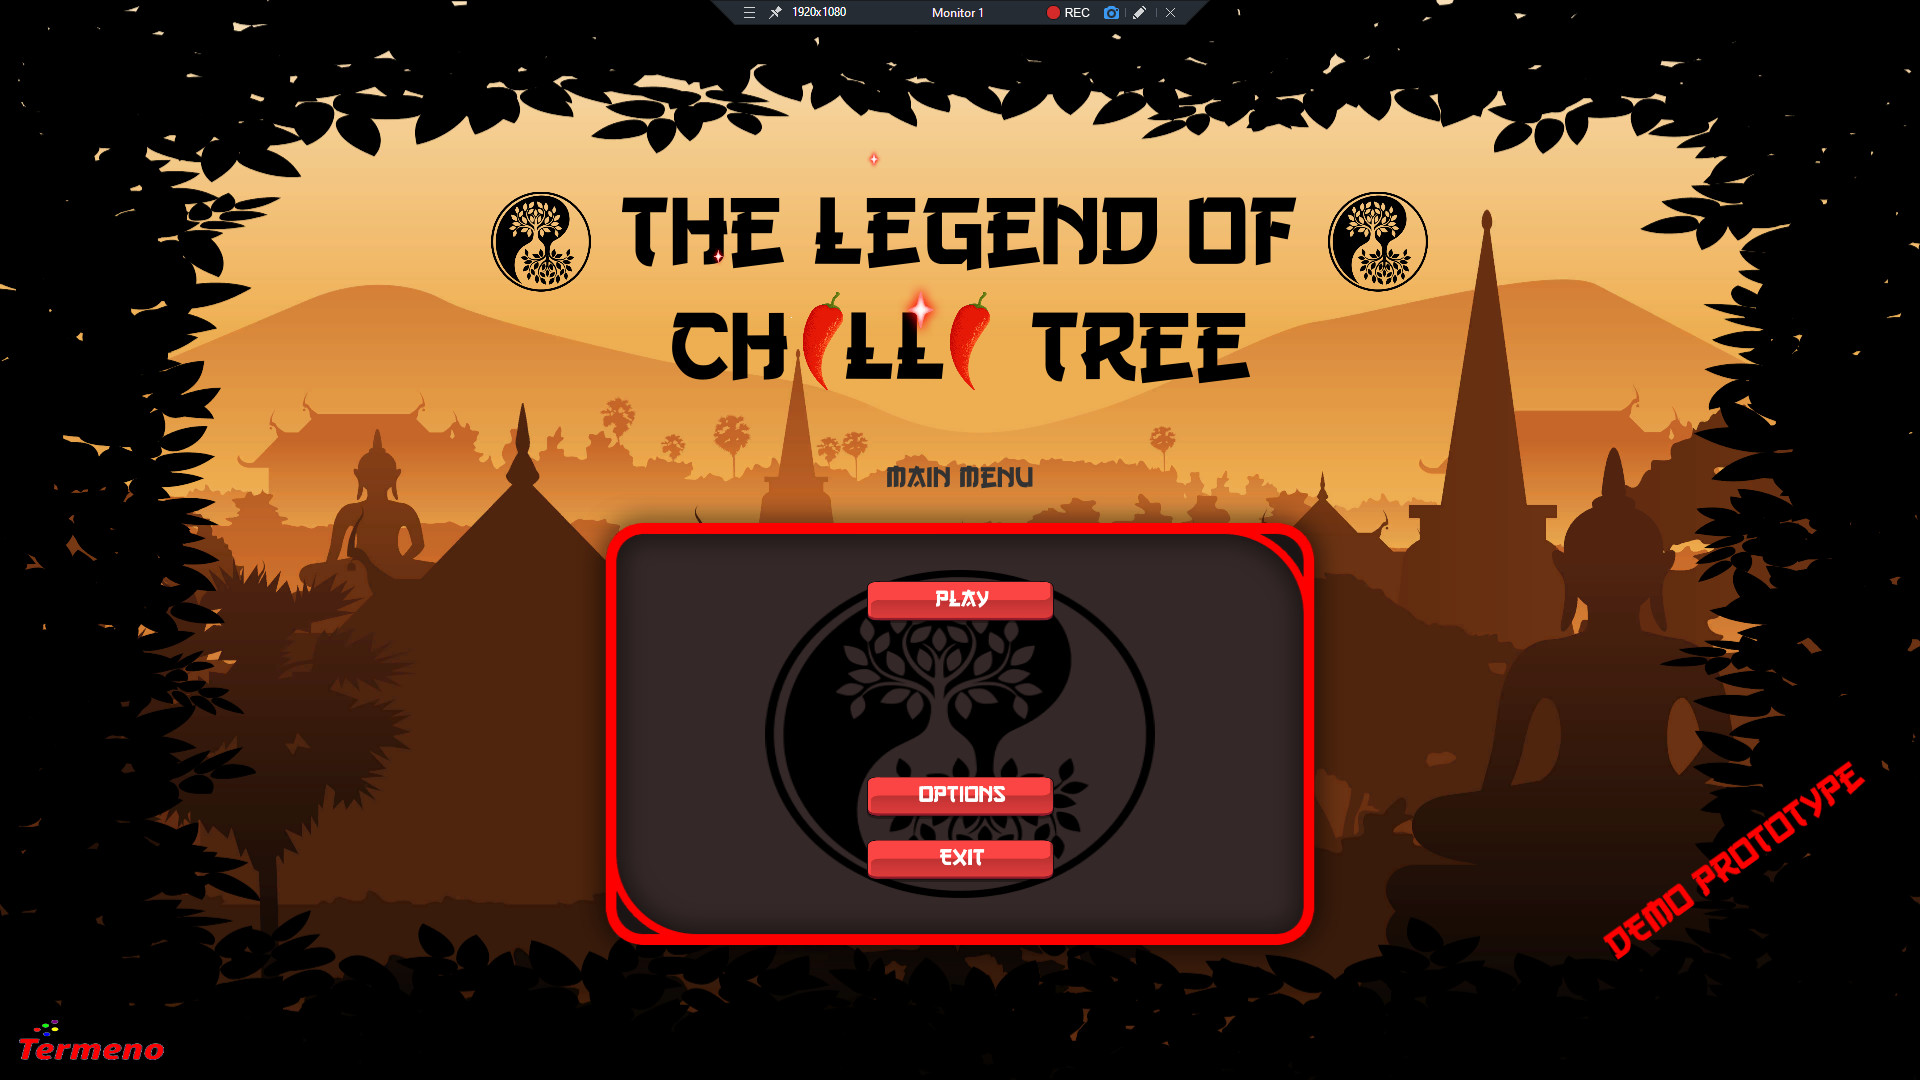 Legend of Chilli Tree Steam CD Key 0.69$